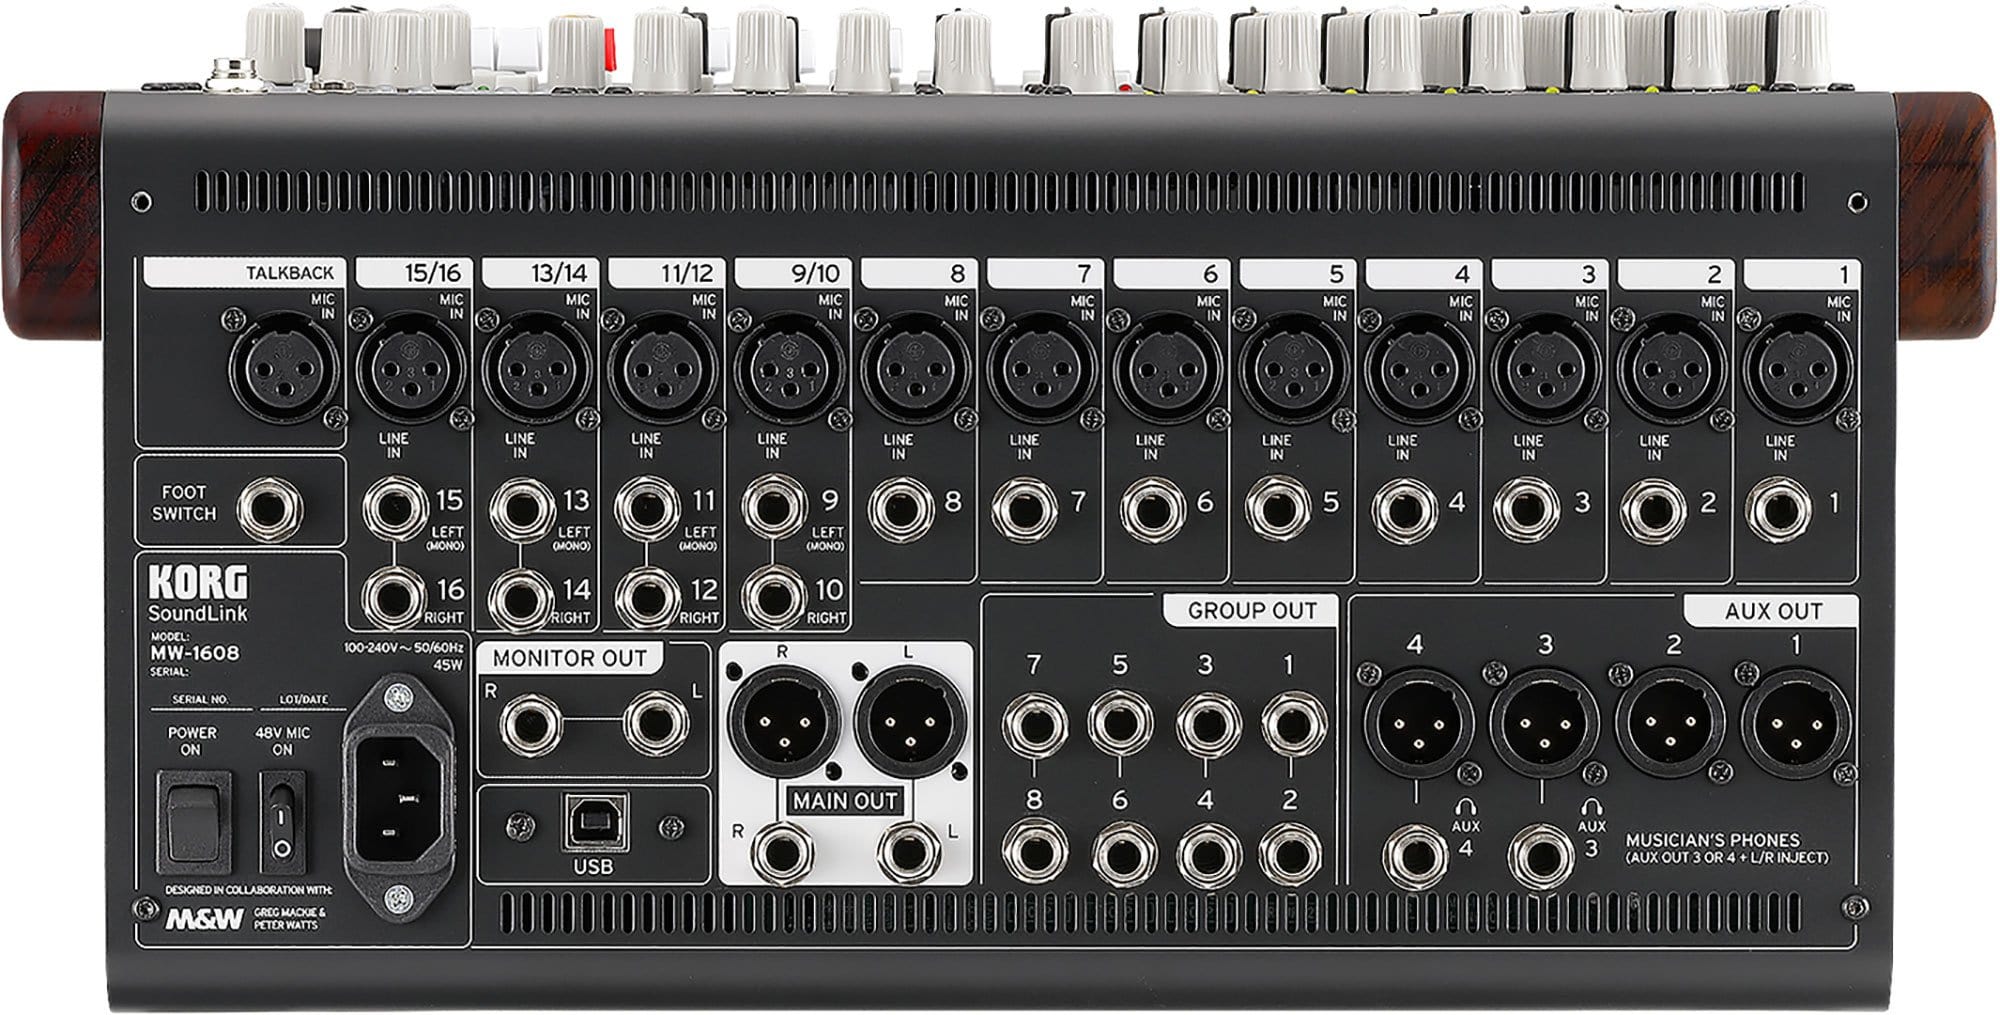 Korg SoundLink MW 1608 Hybrid Analog/Digital Mixer | PSSL ProSound